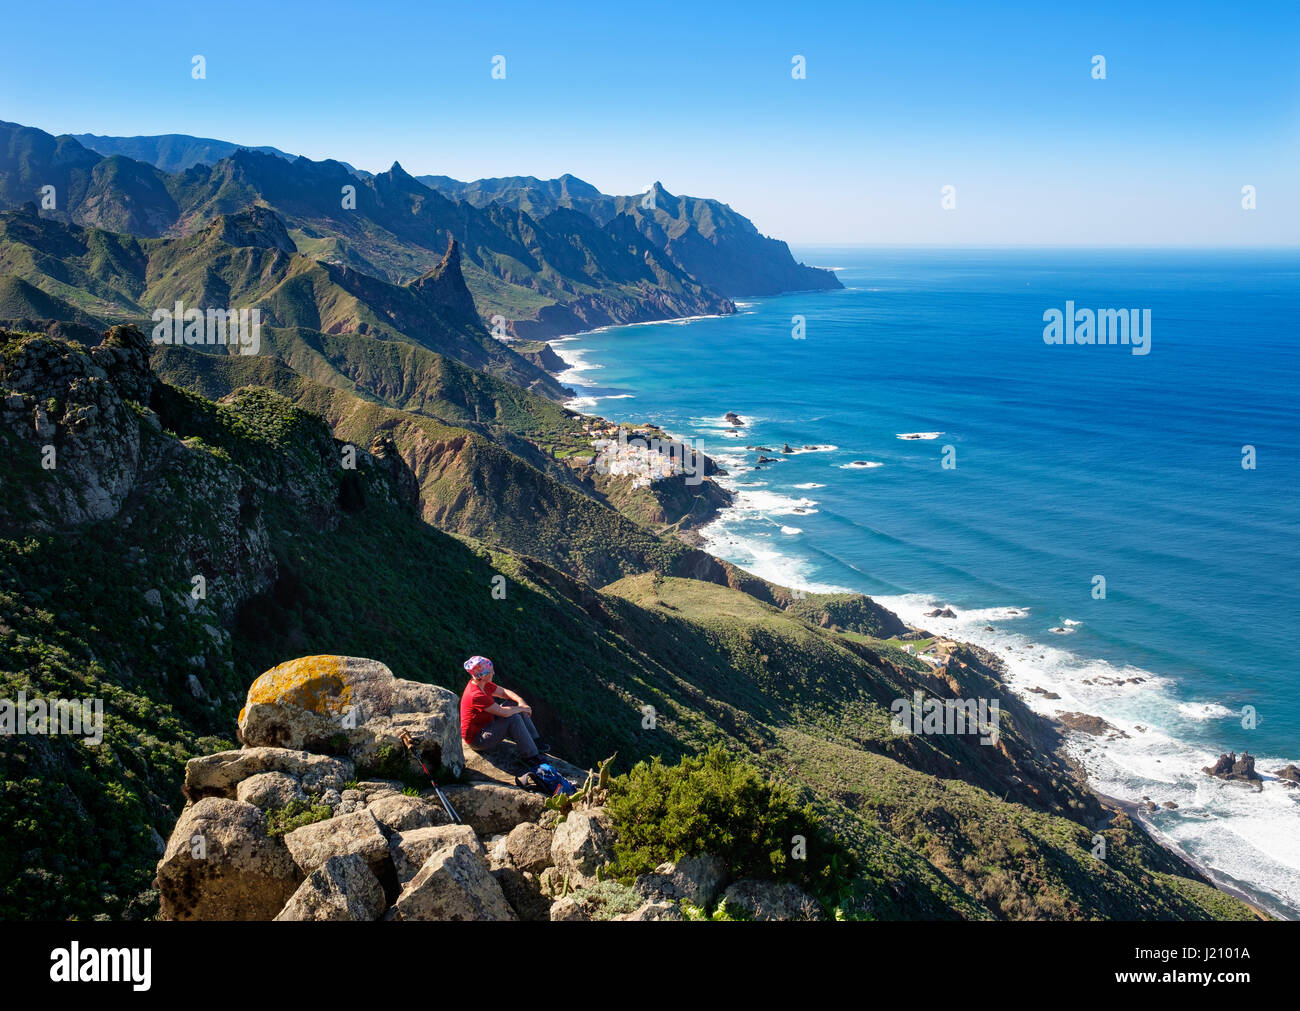 Küste mit Dorf l'almaciga, Anaga-Gebirge, Teneriffa, Kanarische Inseln, Spanien Banque D'Images